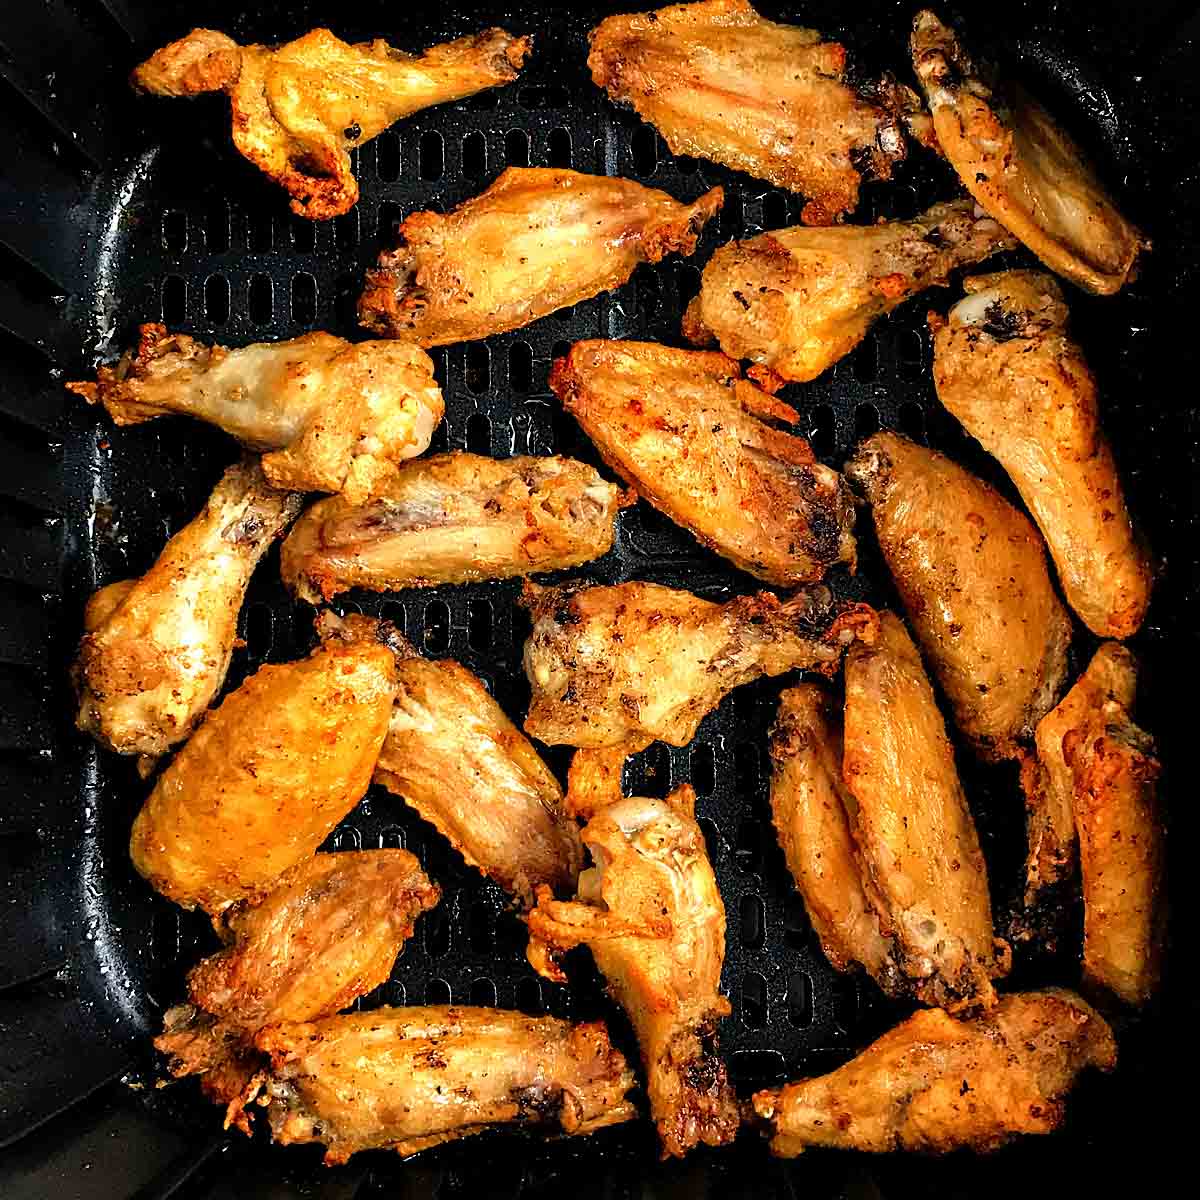 Frozen Chicken wings in air fryer.